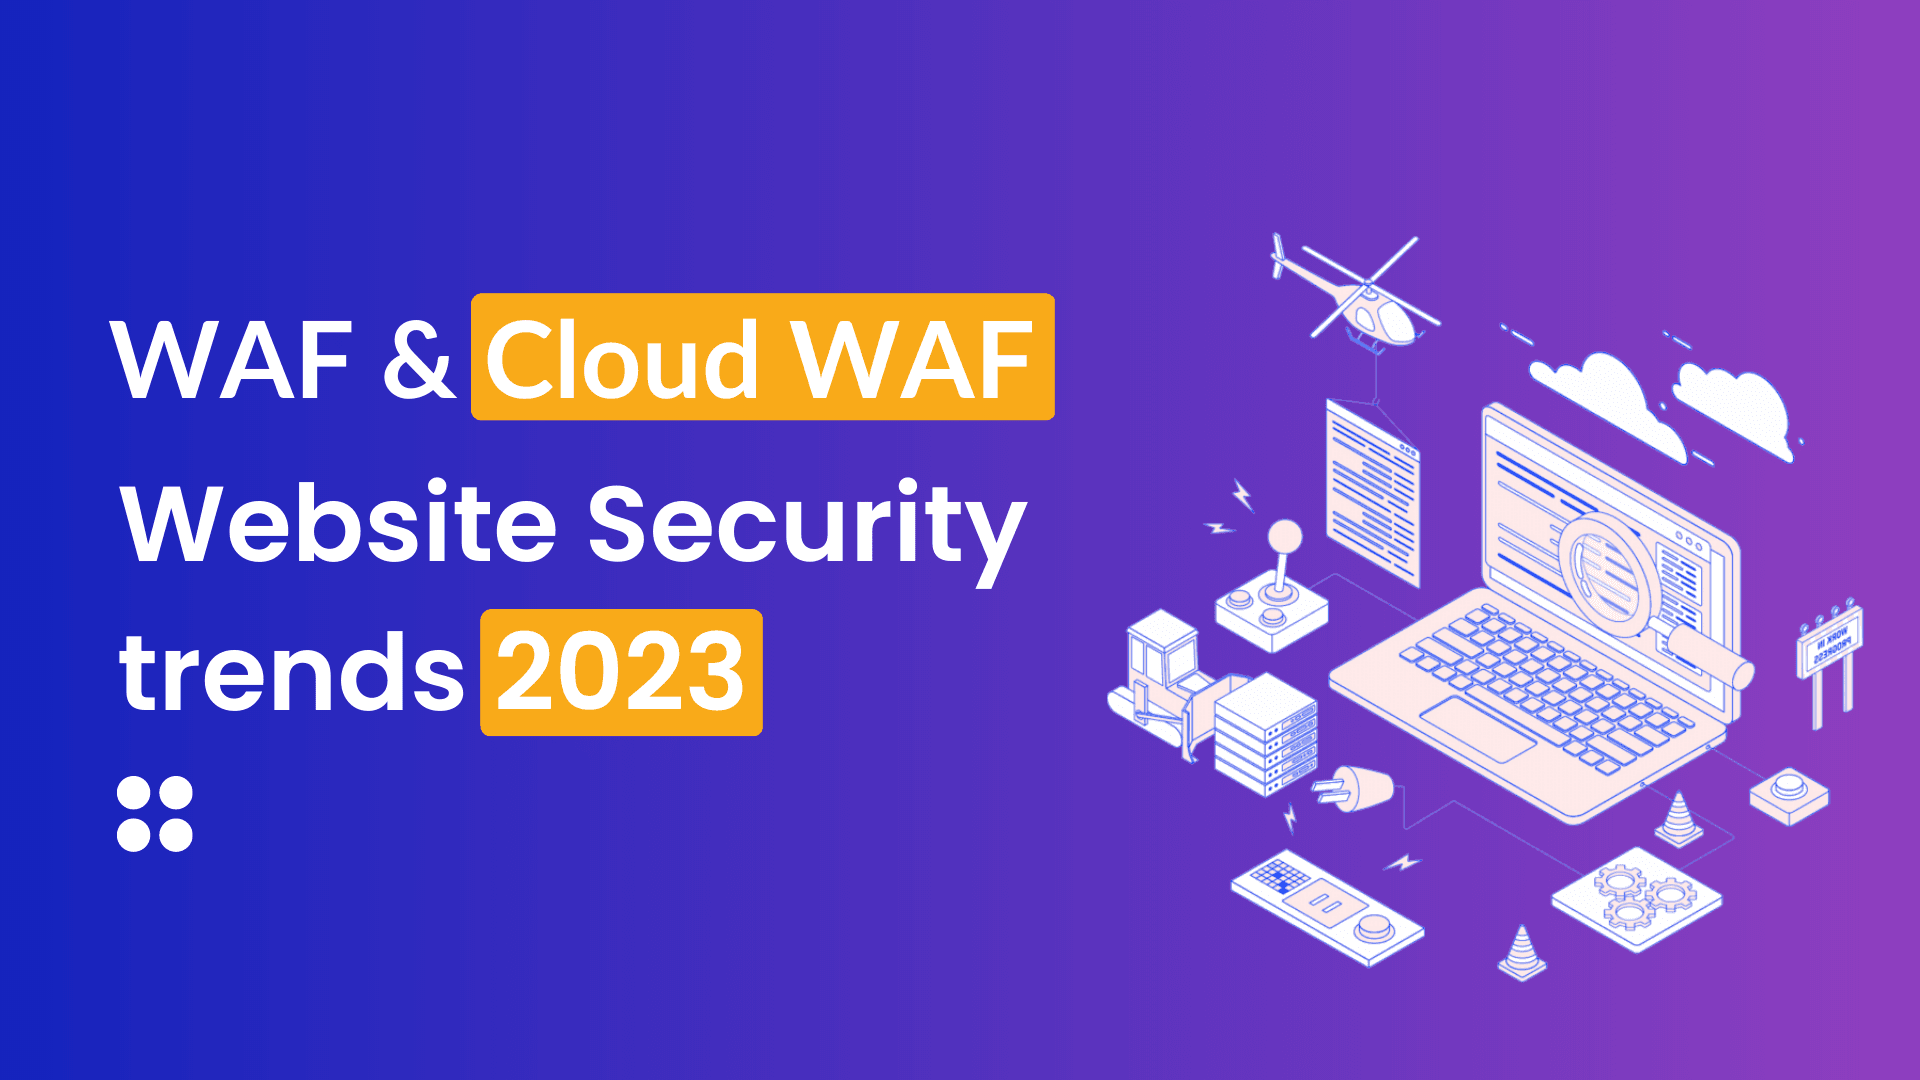 Tìm hiểu về WAF và Cloud WAF - xu hướng bảo mật Website của doanh nghiệp trong năm 2023